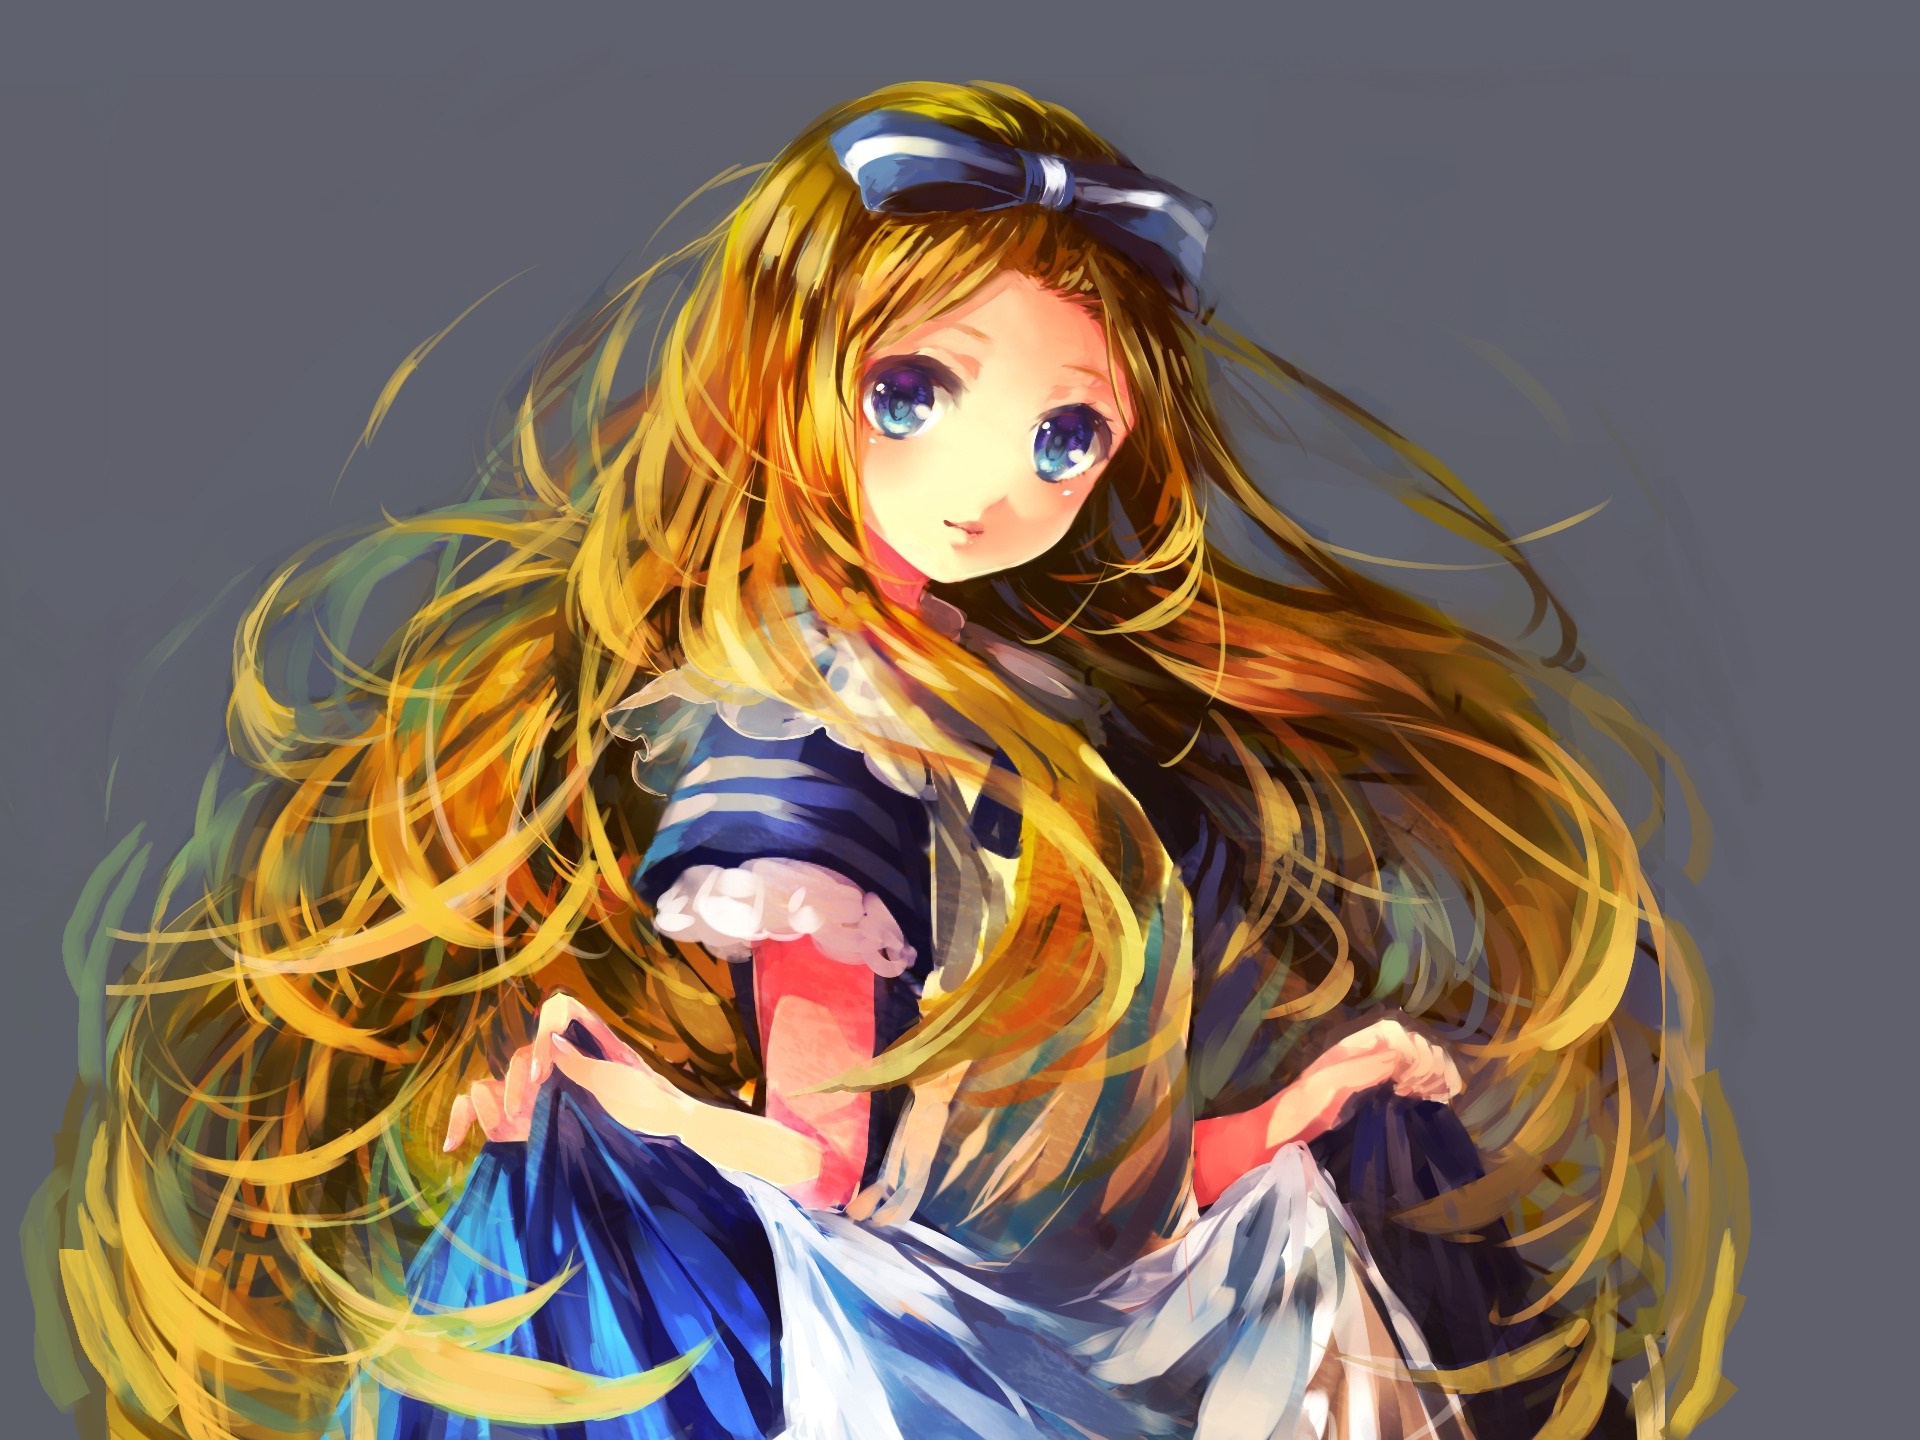 Wonderland, Anime World - Alice in Wonderland Photo (14206728) - Fanpop